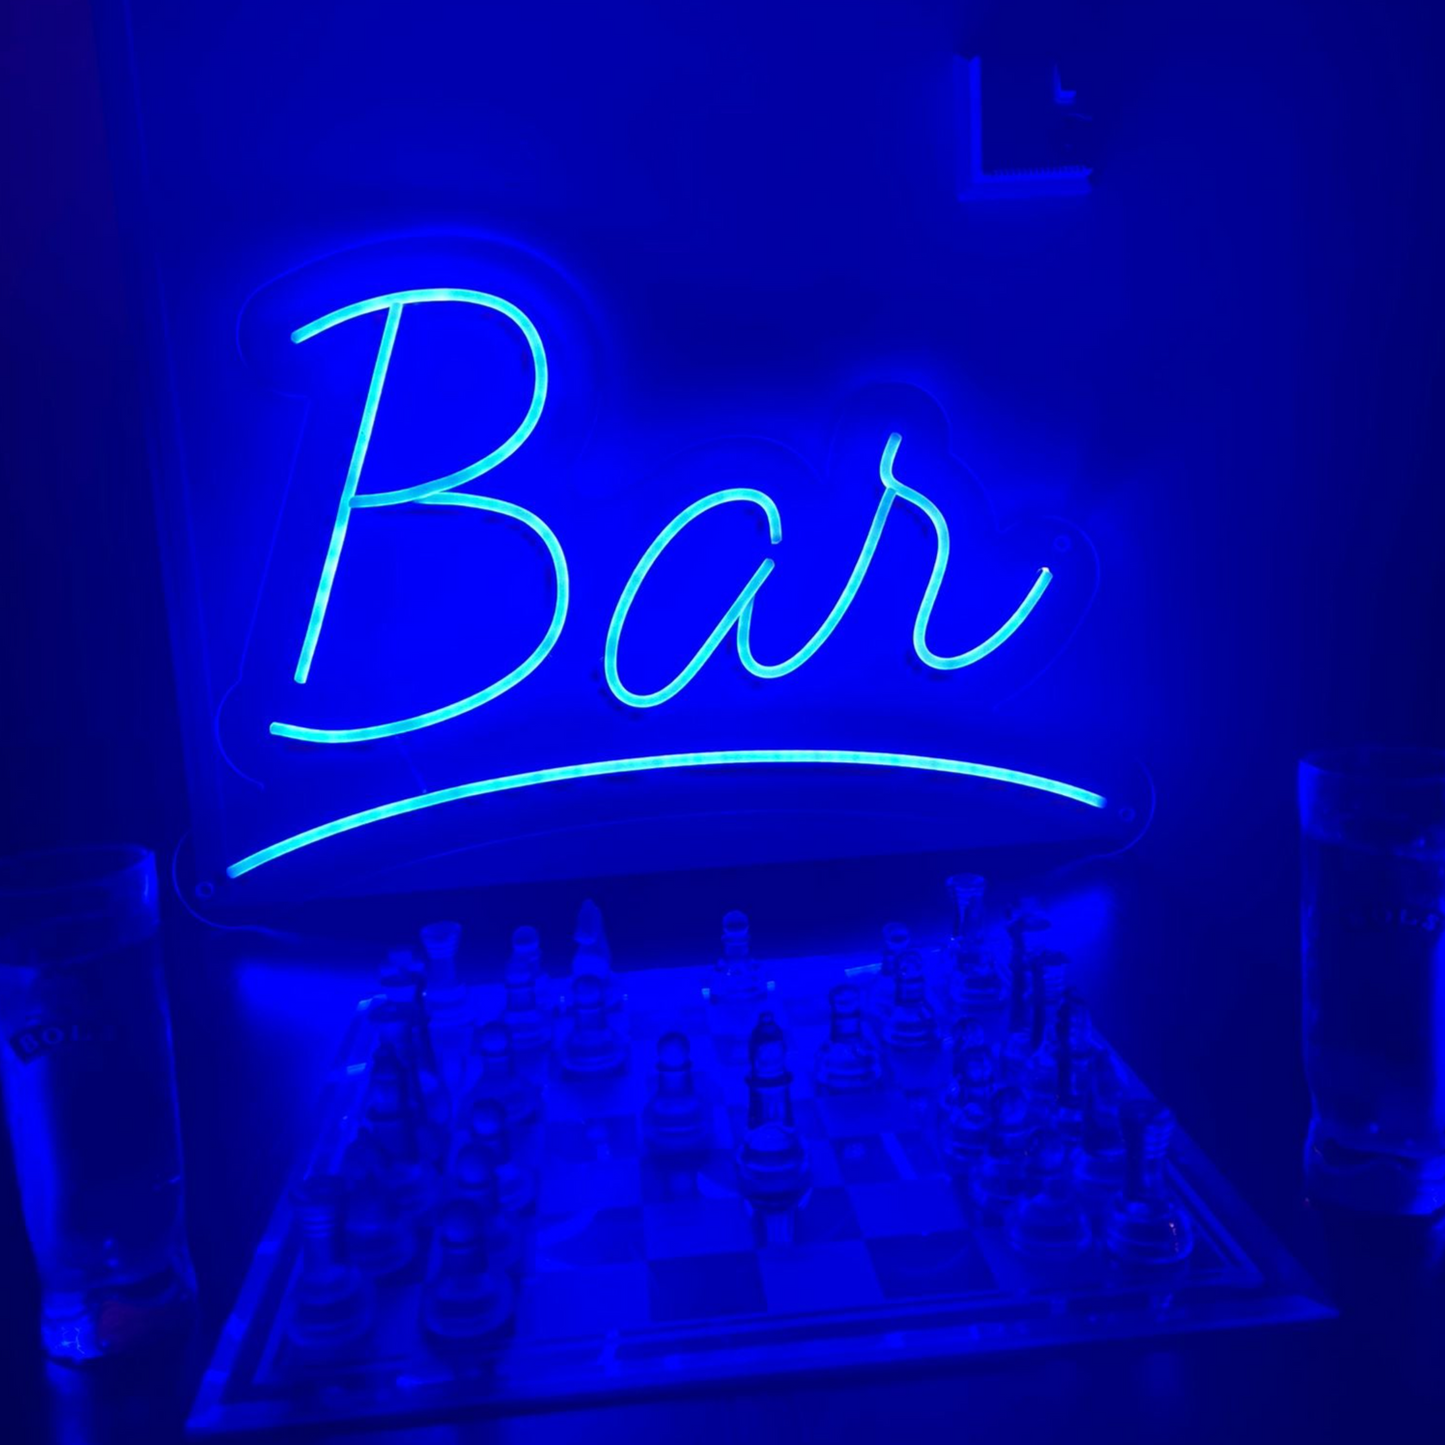 Bar neonskylt